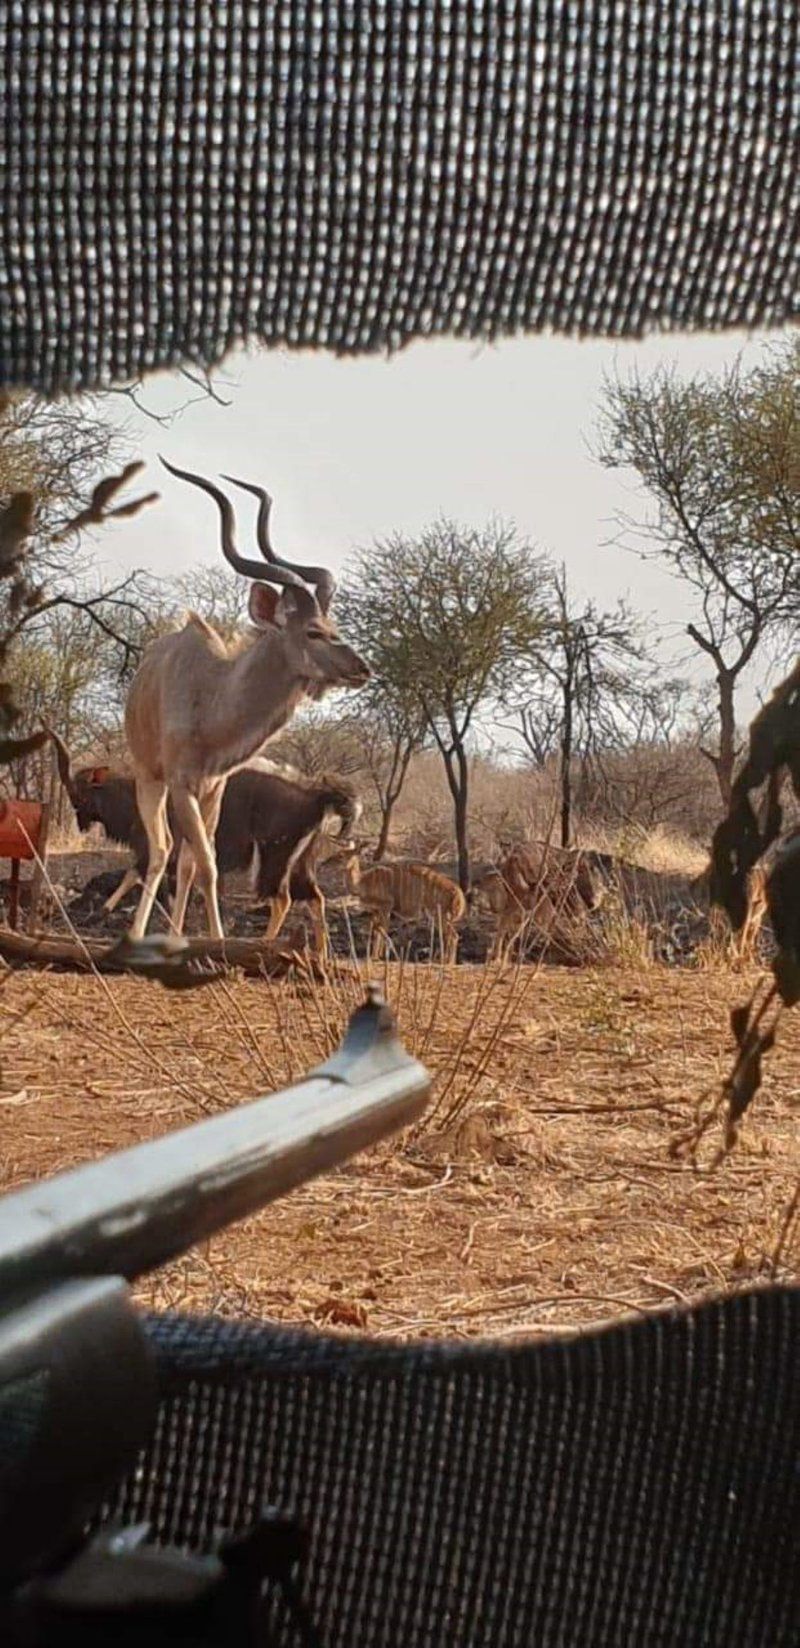 Raas En Rus Game Farm Dwaalboom Limpopo Province South Africa Deer, Mammal, Animal, Herbivore